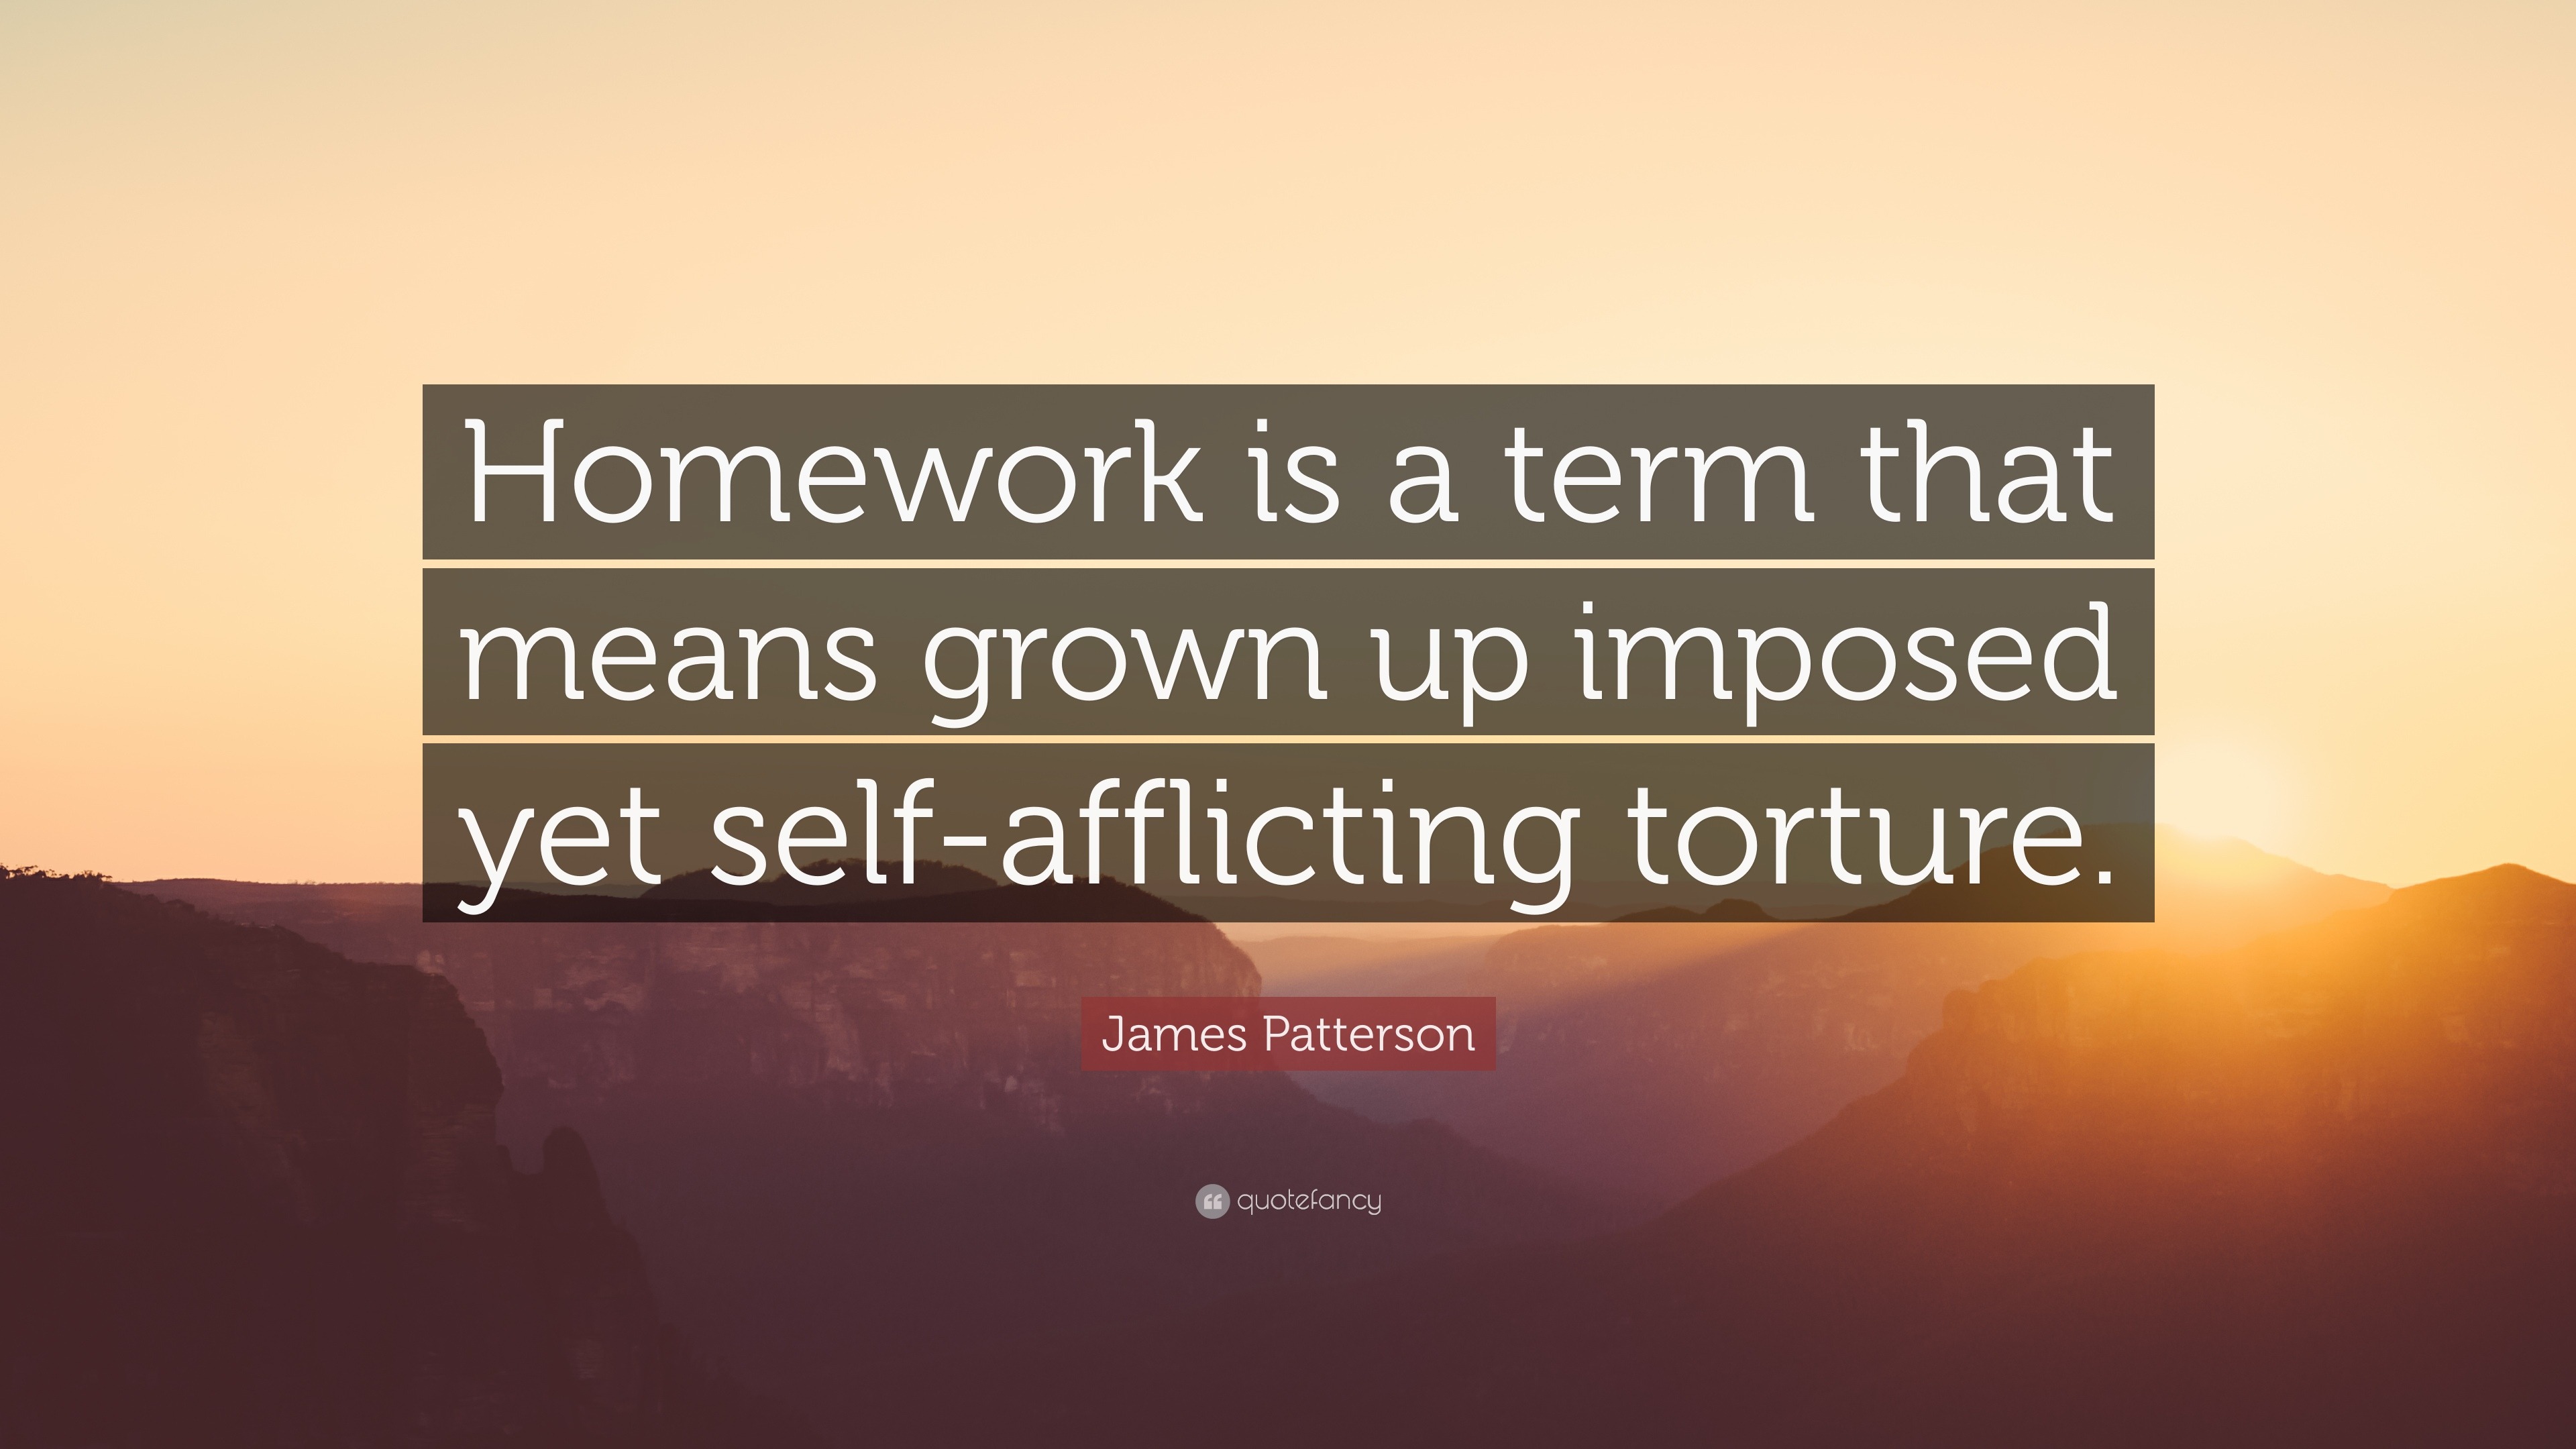 quote on homework